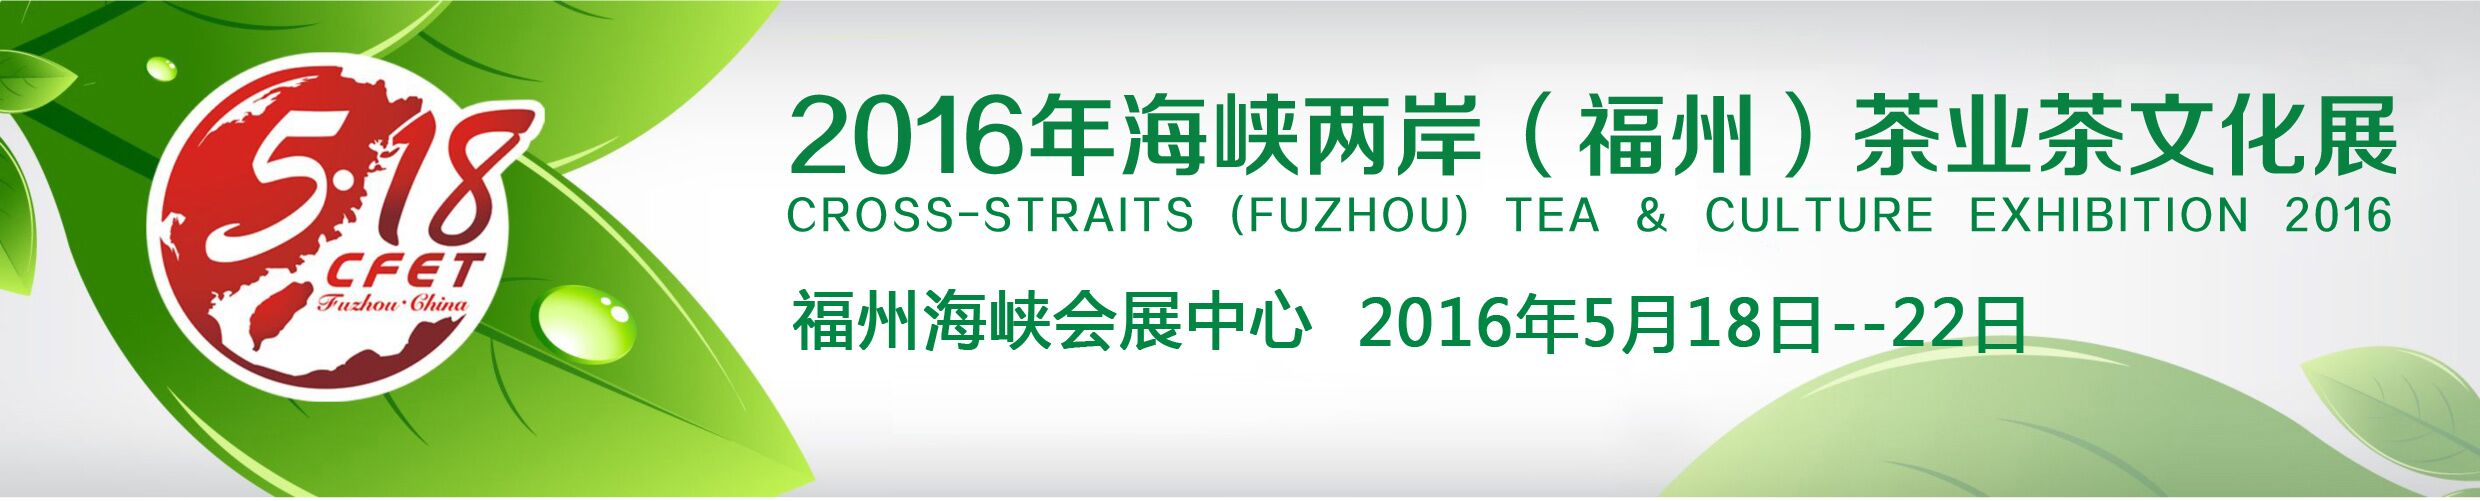 2016年海峡两岸（福州）茶业文化展览会